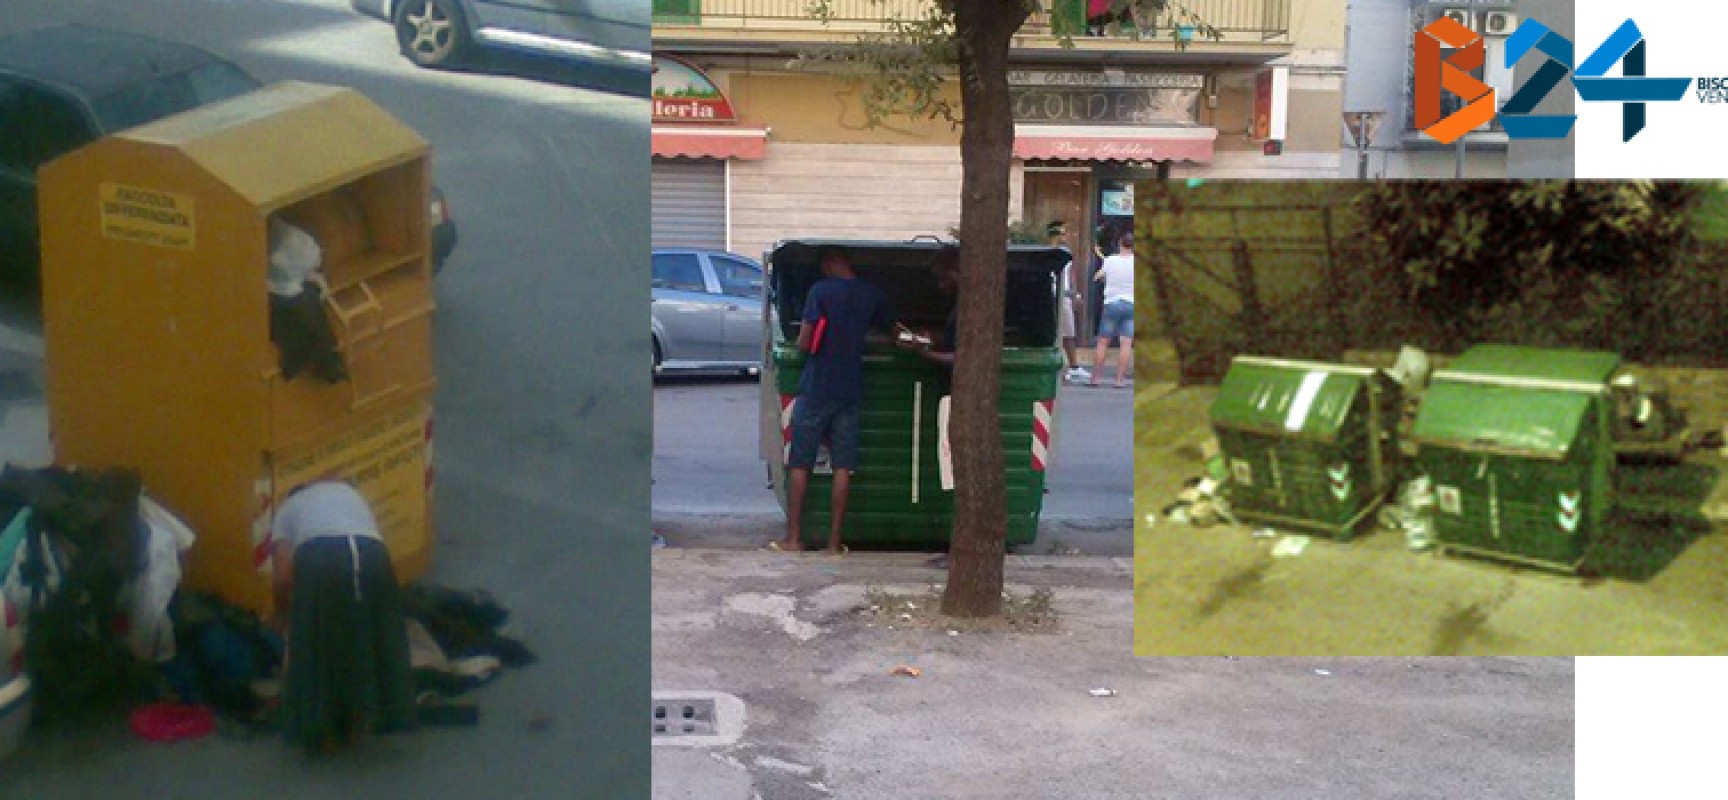 “Cassonetti depredati e rifiuti sparsi per le strade del centro”, la denuncia di un nostro lettore